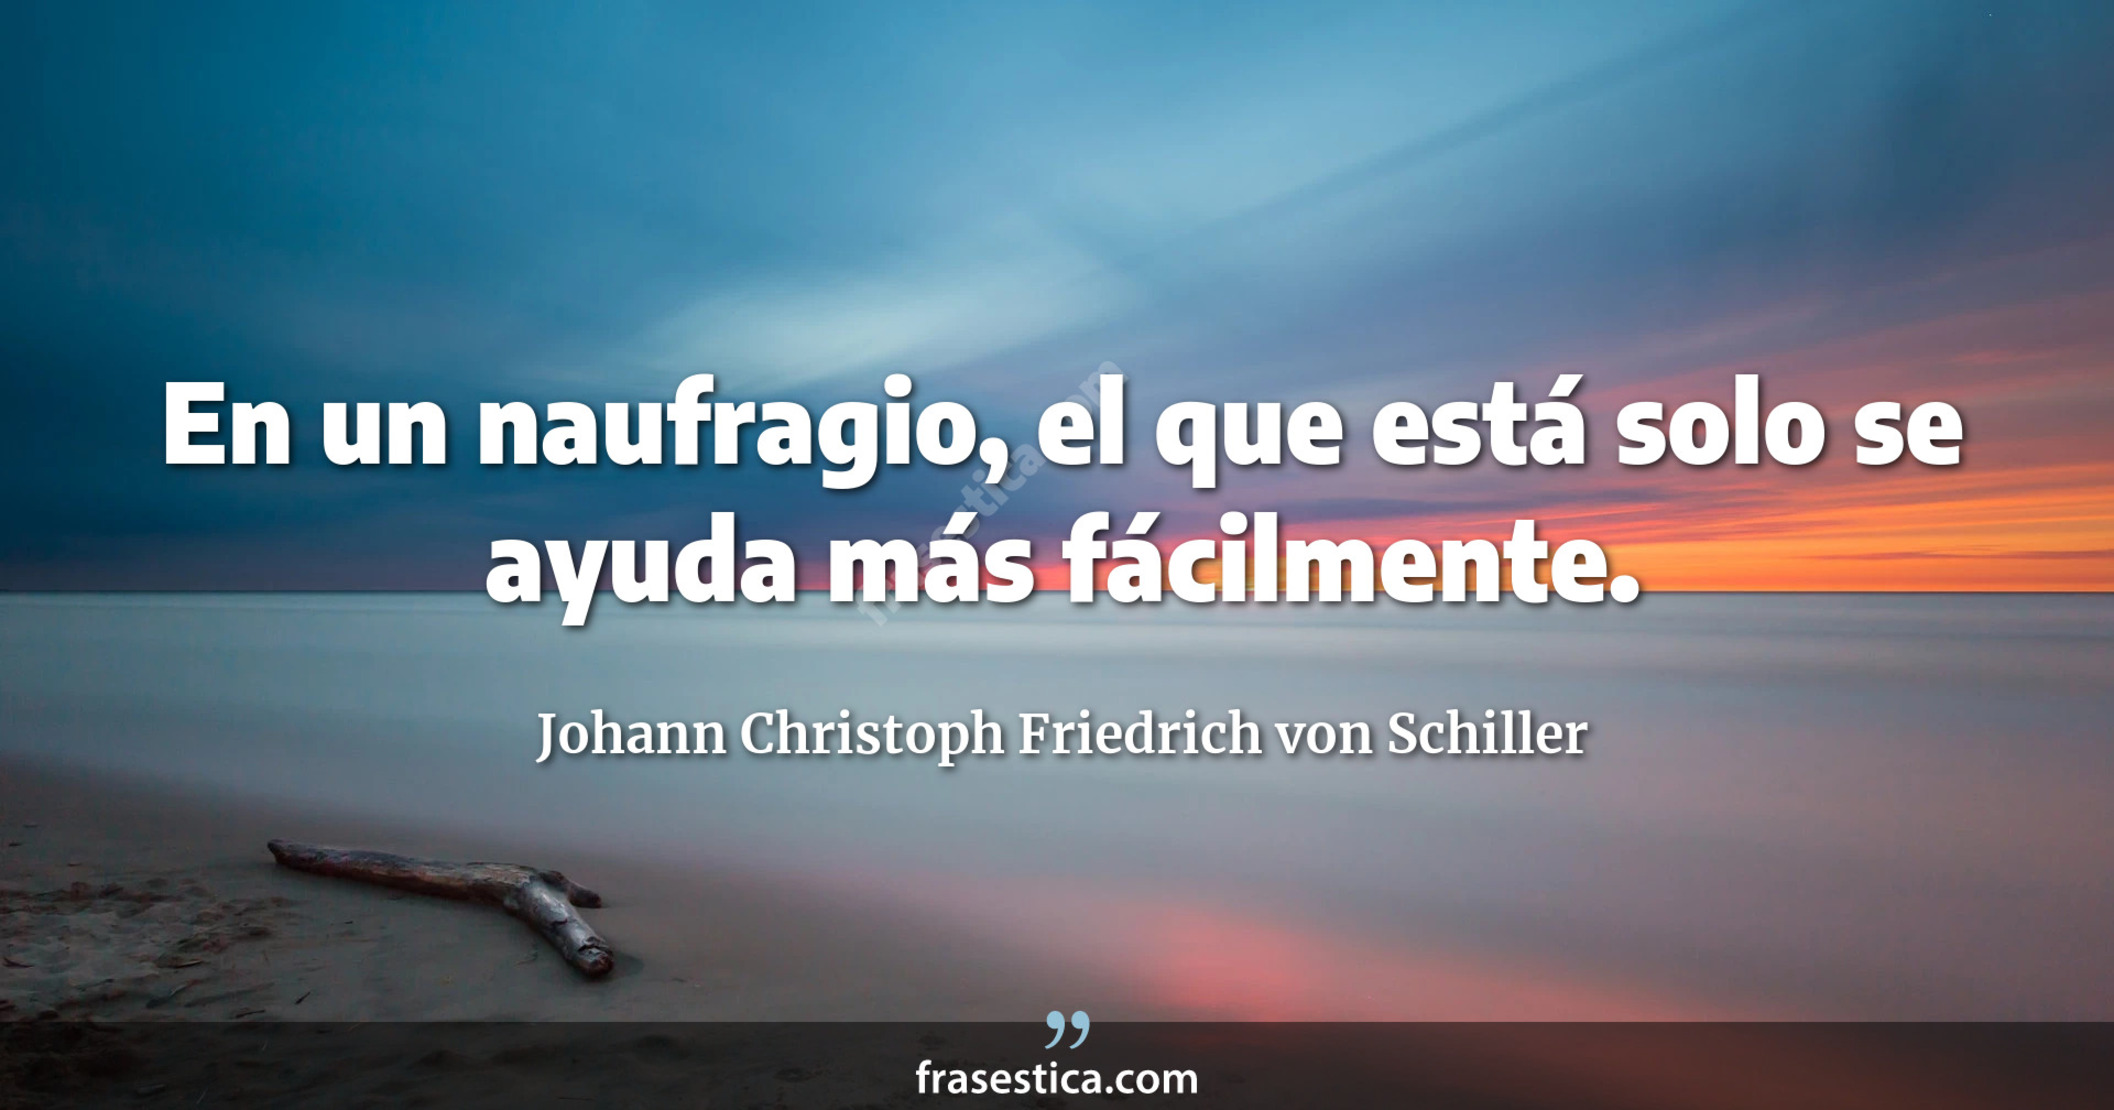 En un naufragio, el que está solo se ayuda más fácilmente. - Johann Christoph Friedrich von Schiller